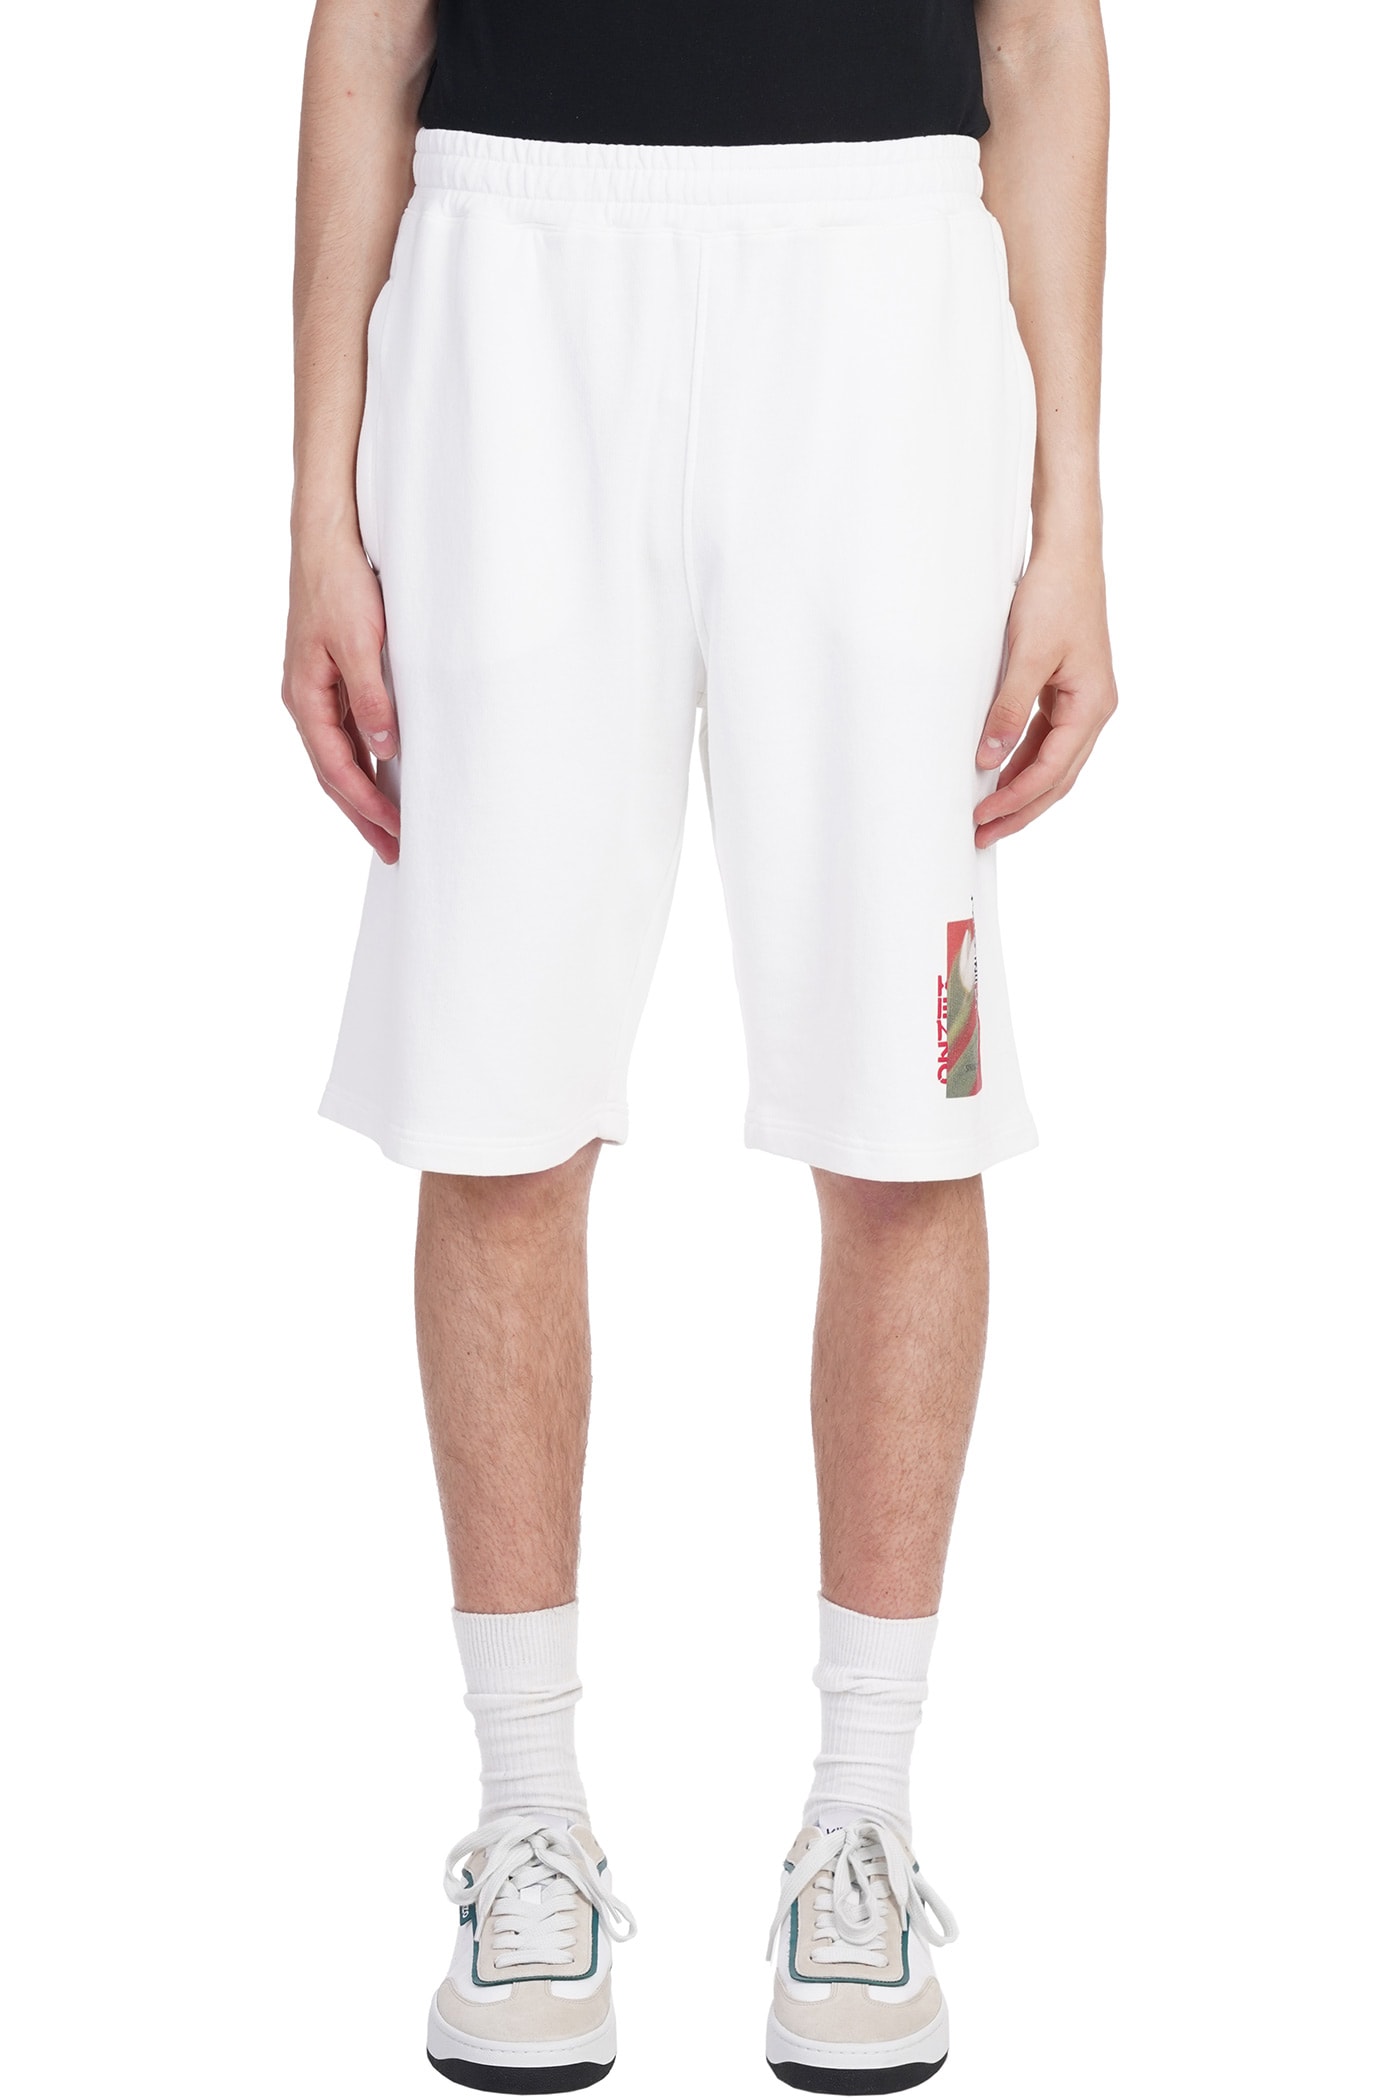 Kenzo Shorts In White Cotton